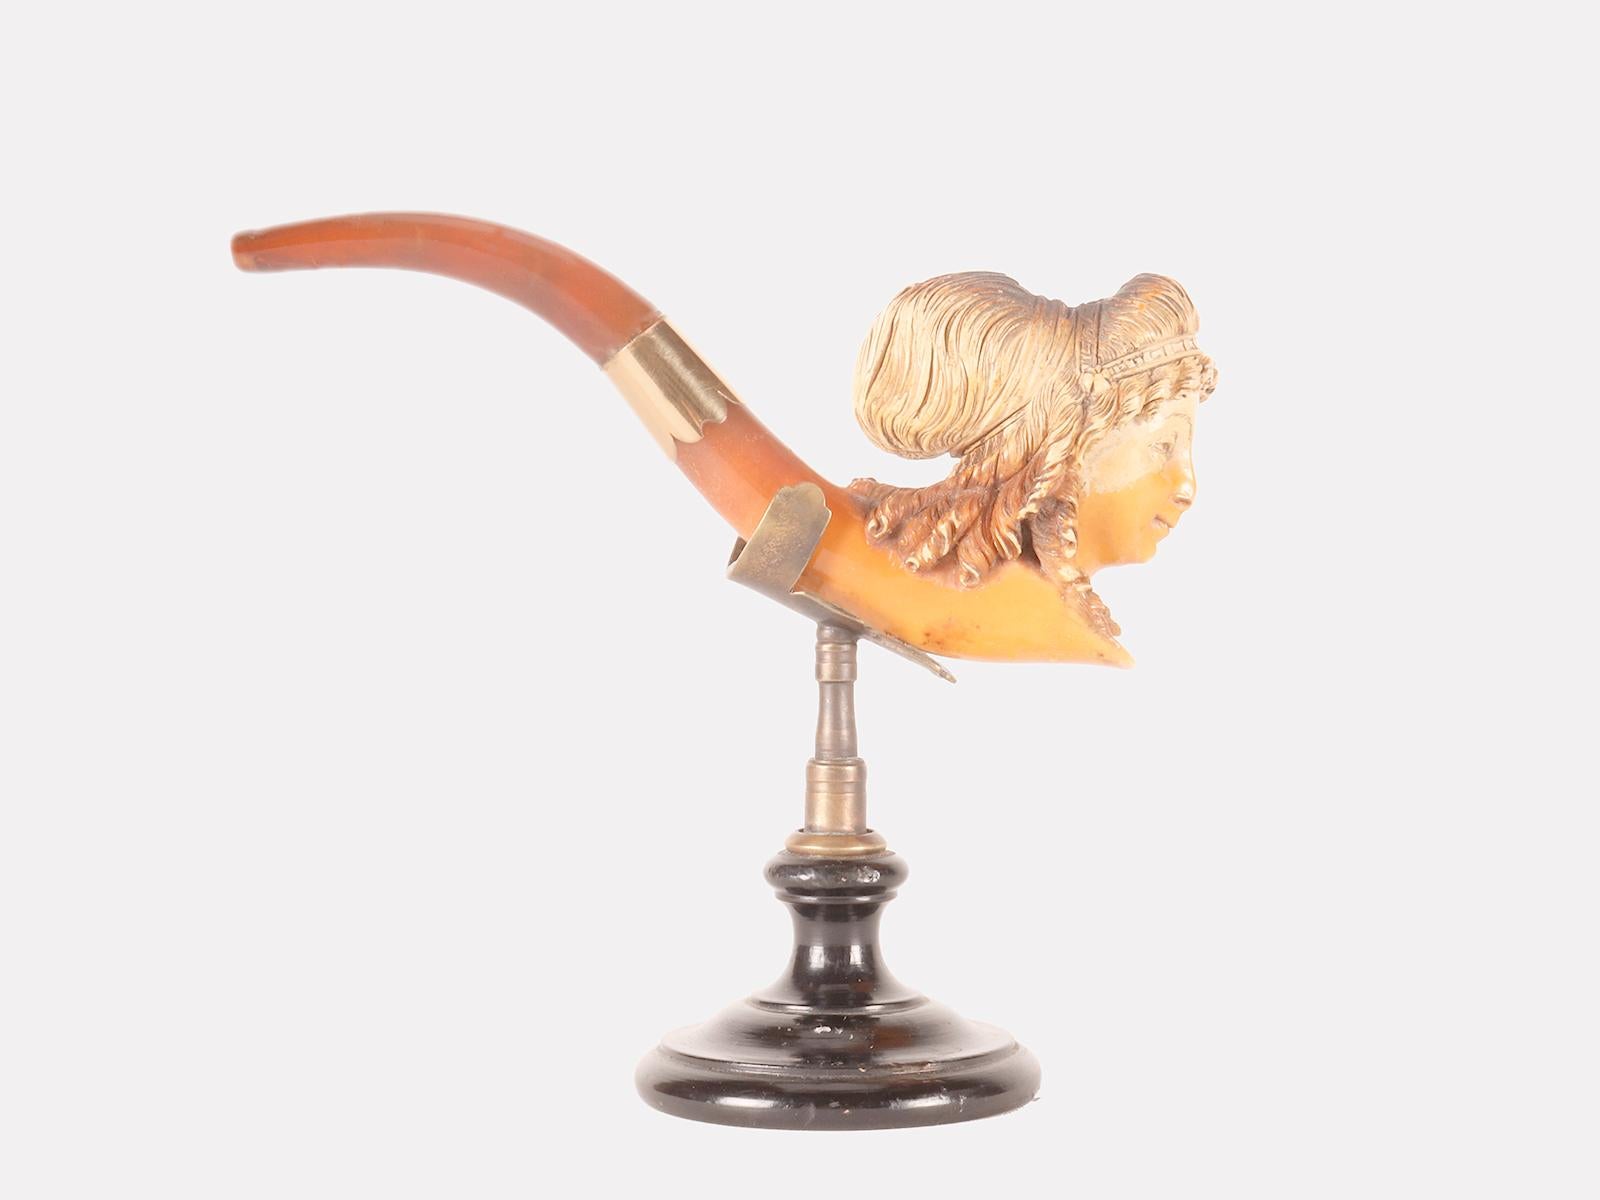 Pipe en écume sculptée, avec embouchure en ambre et bandeau en or. Dans le fourneau de la pipe, une tête de femme est représentée avec des cheveux rassemblés par une coiffure de rubans et de fleurs. Vienne, Autriche vers 1890. (Le socle est destiné